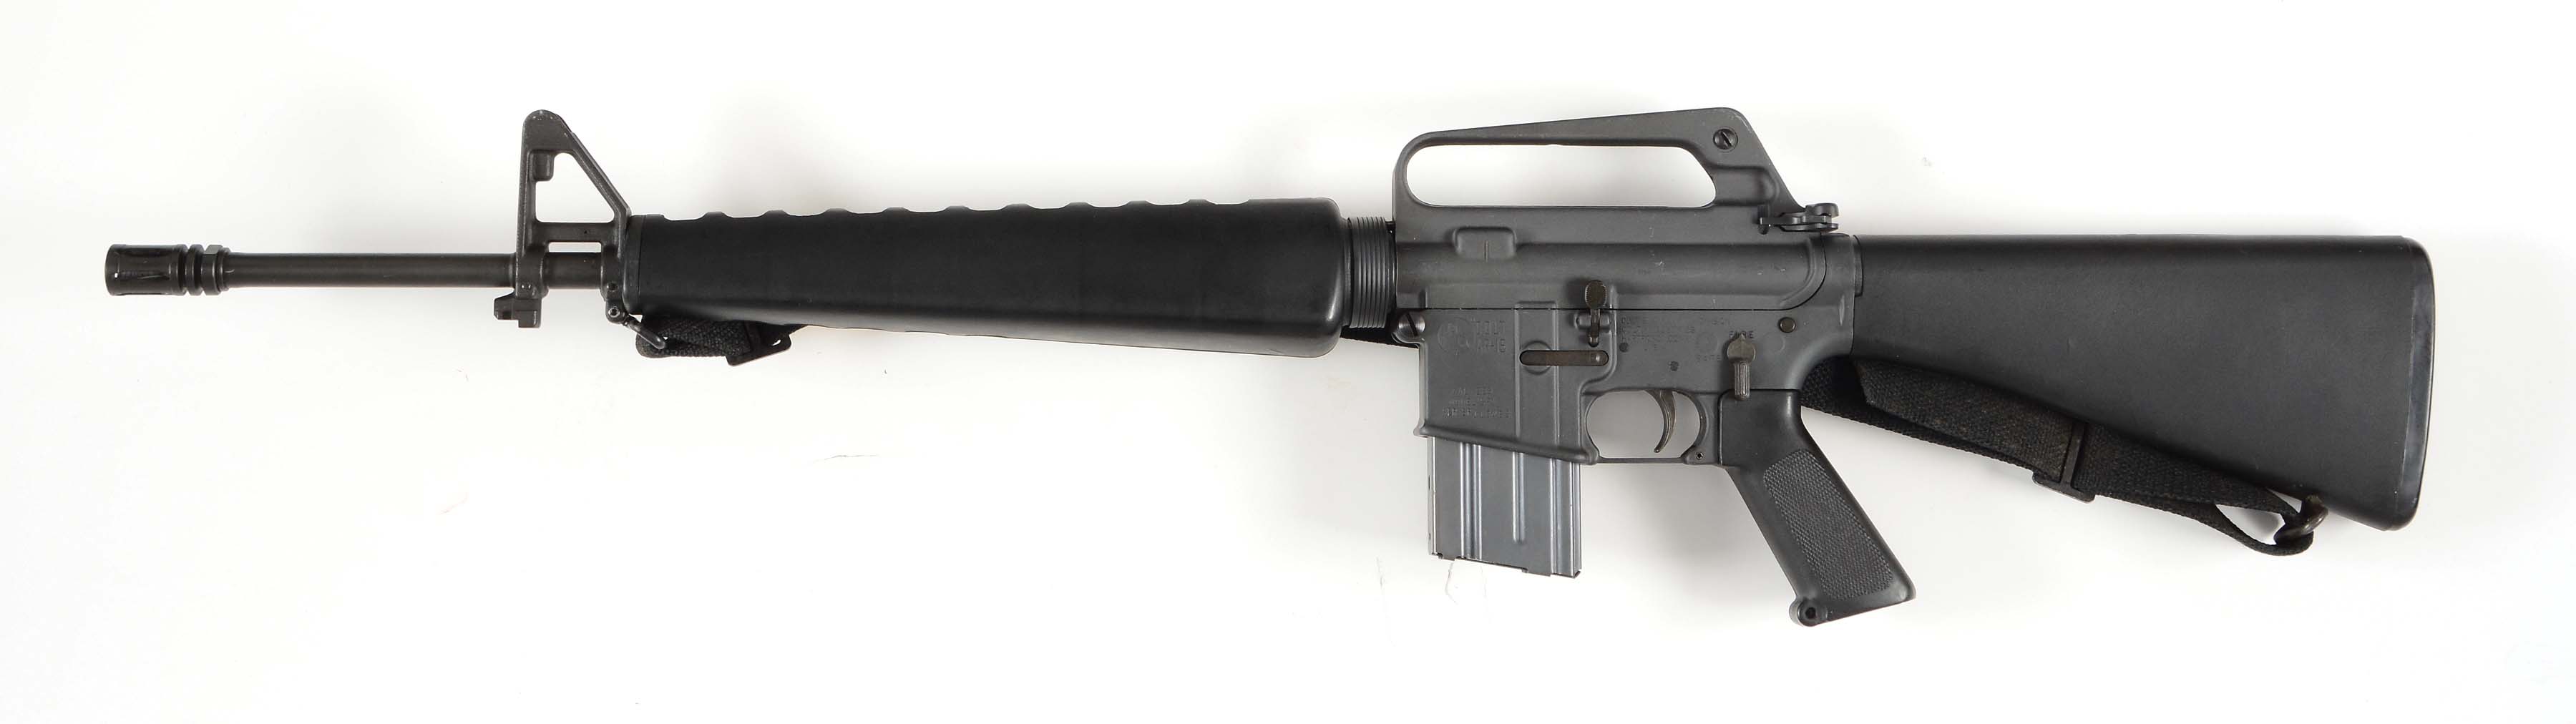 М 16 для мужчин. M-16 штурмовая винтовка. Штурмовая винтовка Colt m16a4. Штурмовая винтовка (автомат) ar-15 / m16. Штурмовая винтовка CQ 5,56 / m311.